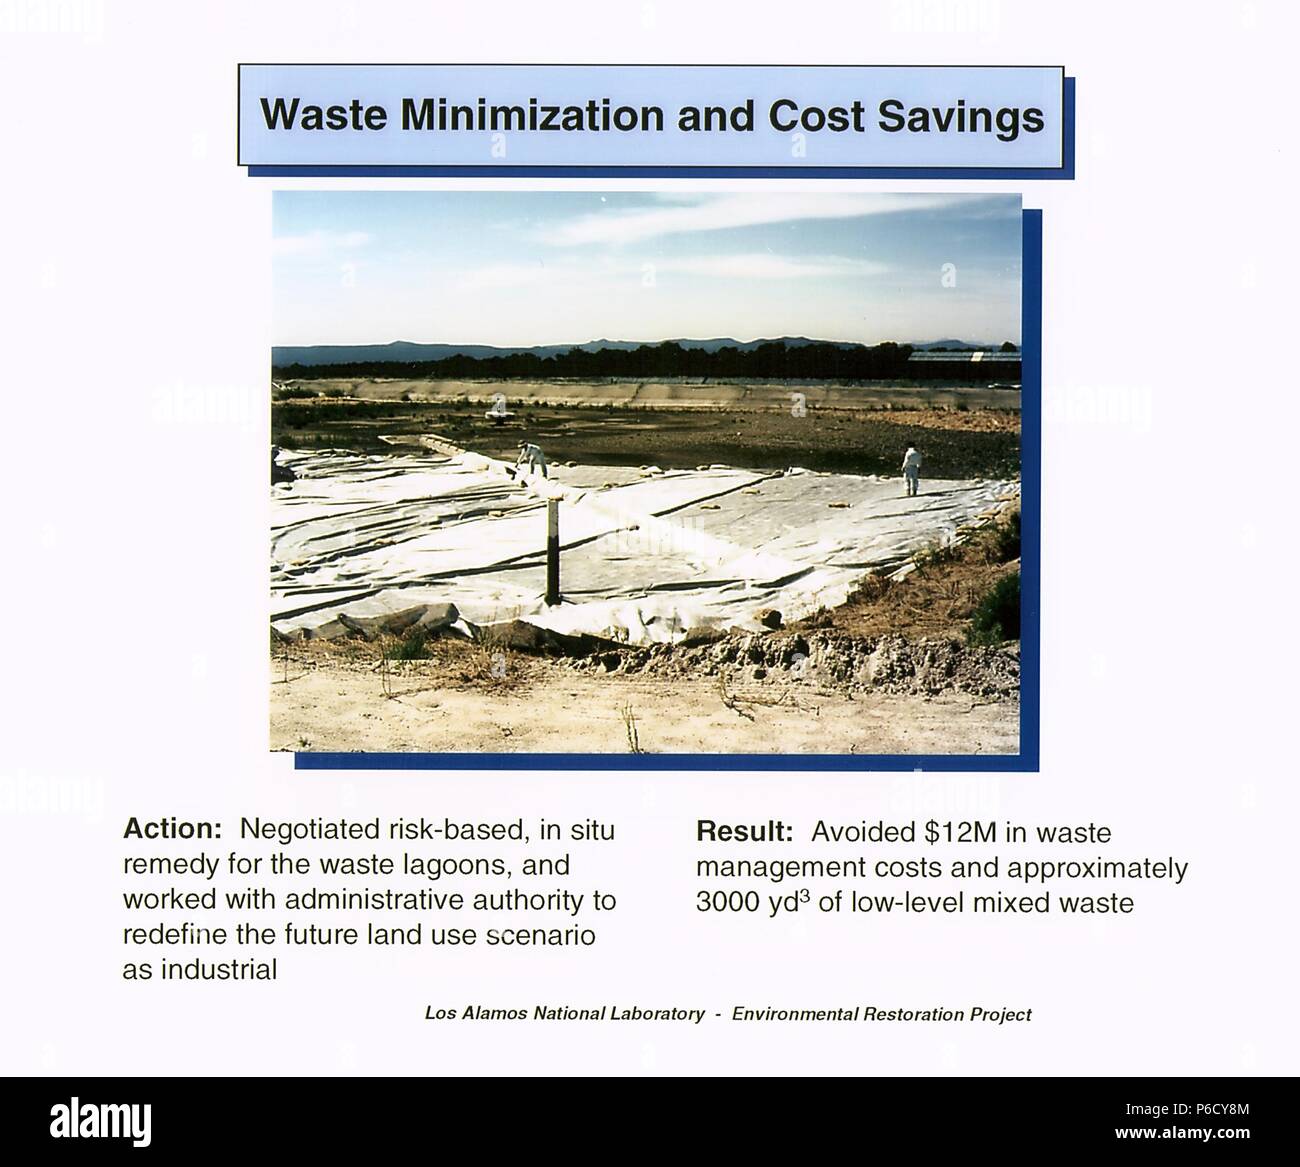 La minimización de los residuos y el ahorro de costes la acción propuesta por el Laboratorio Nacional de Los Álamos para el proyecto de restauración ambiental de Los Alamos, Nuevo México, 2016. Imagen cortesía del Departamento de Energía de Estados Unidos. () Foto de stock